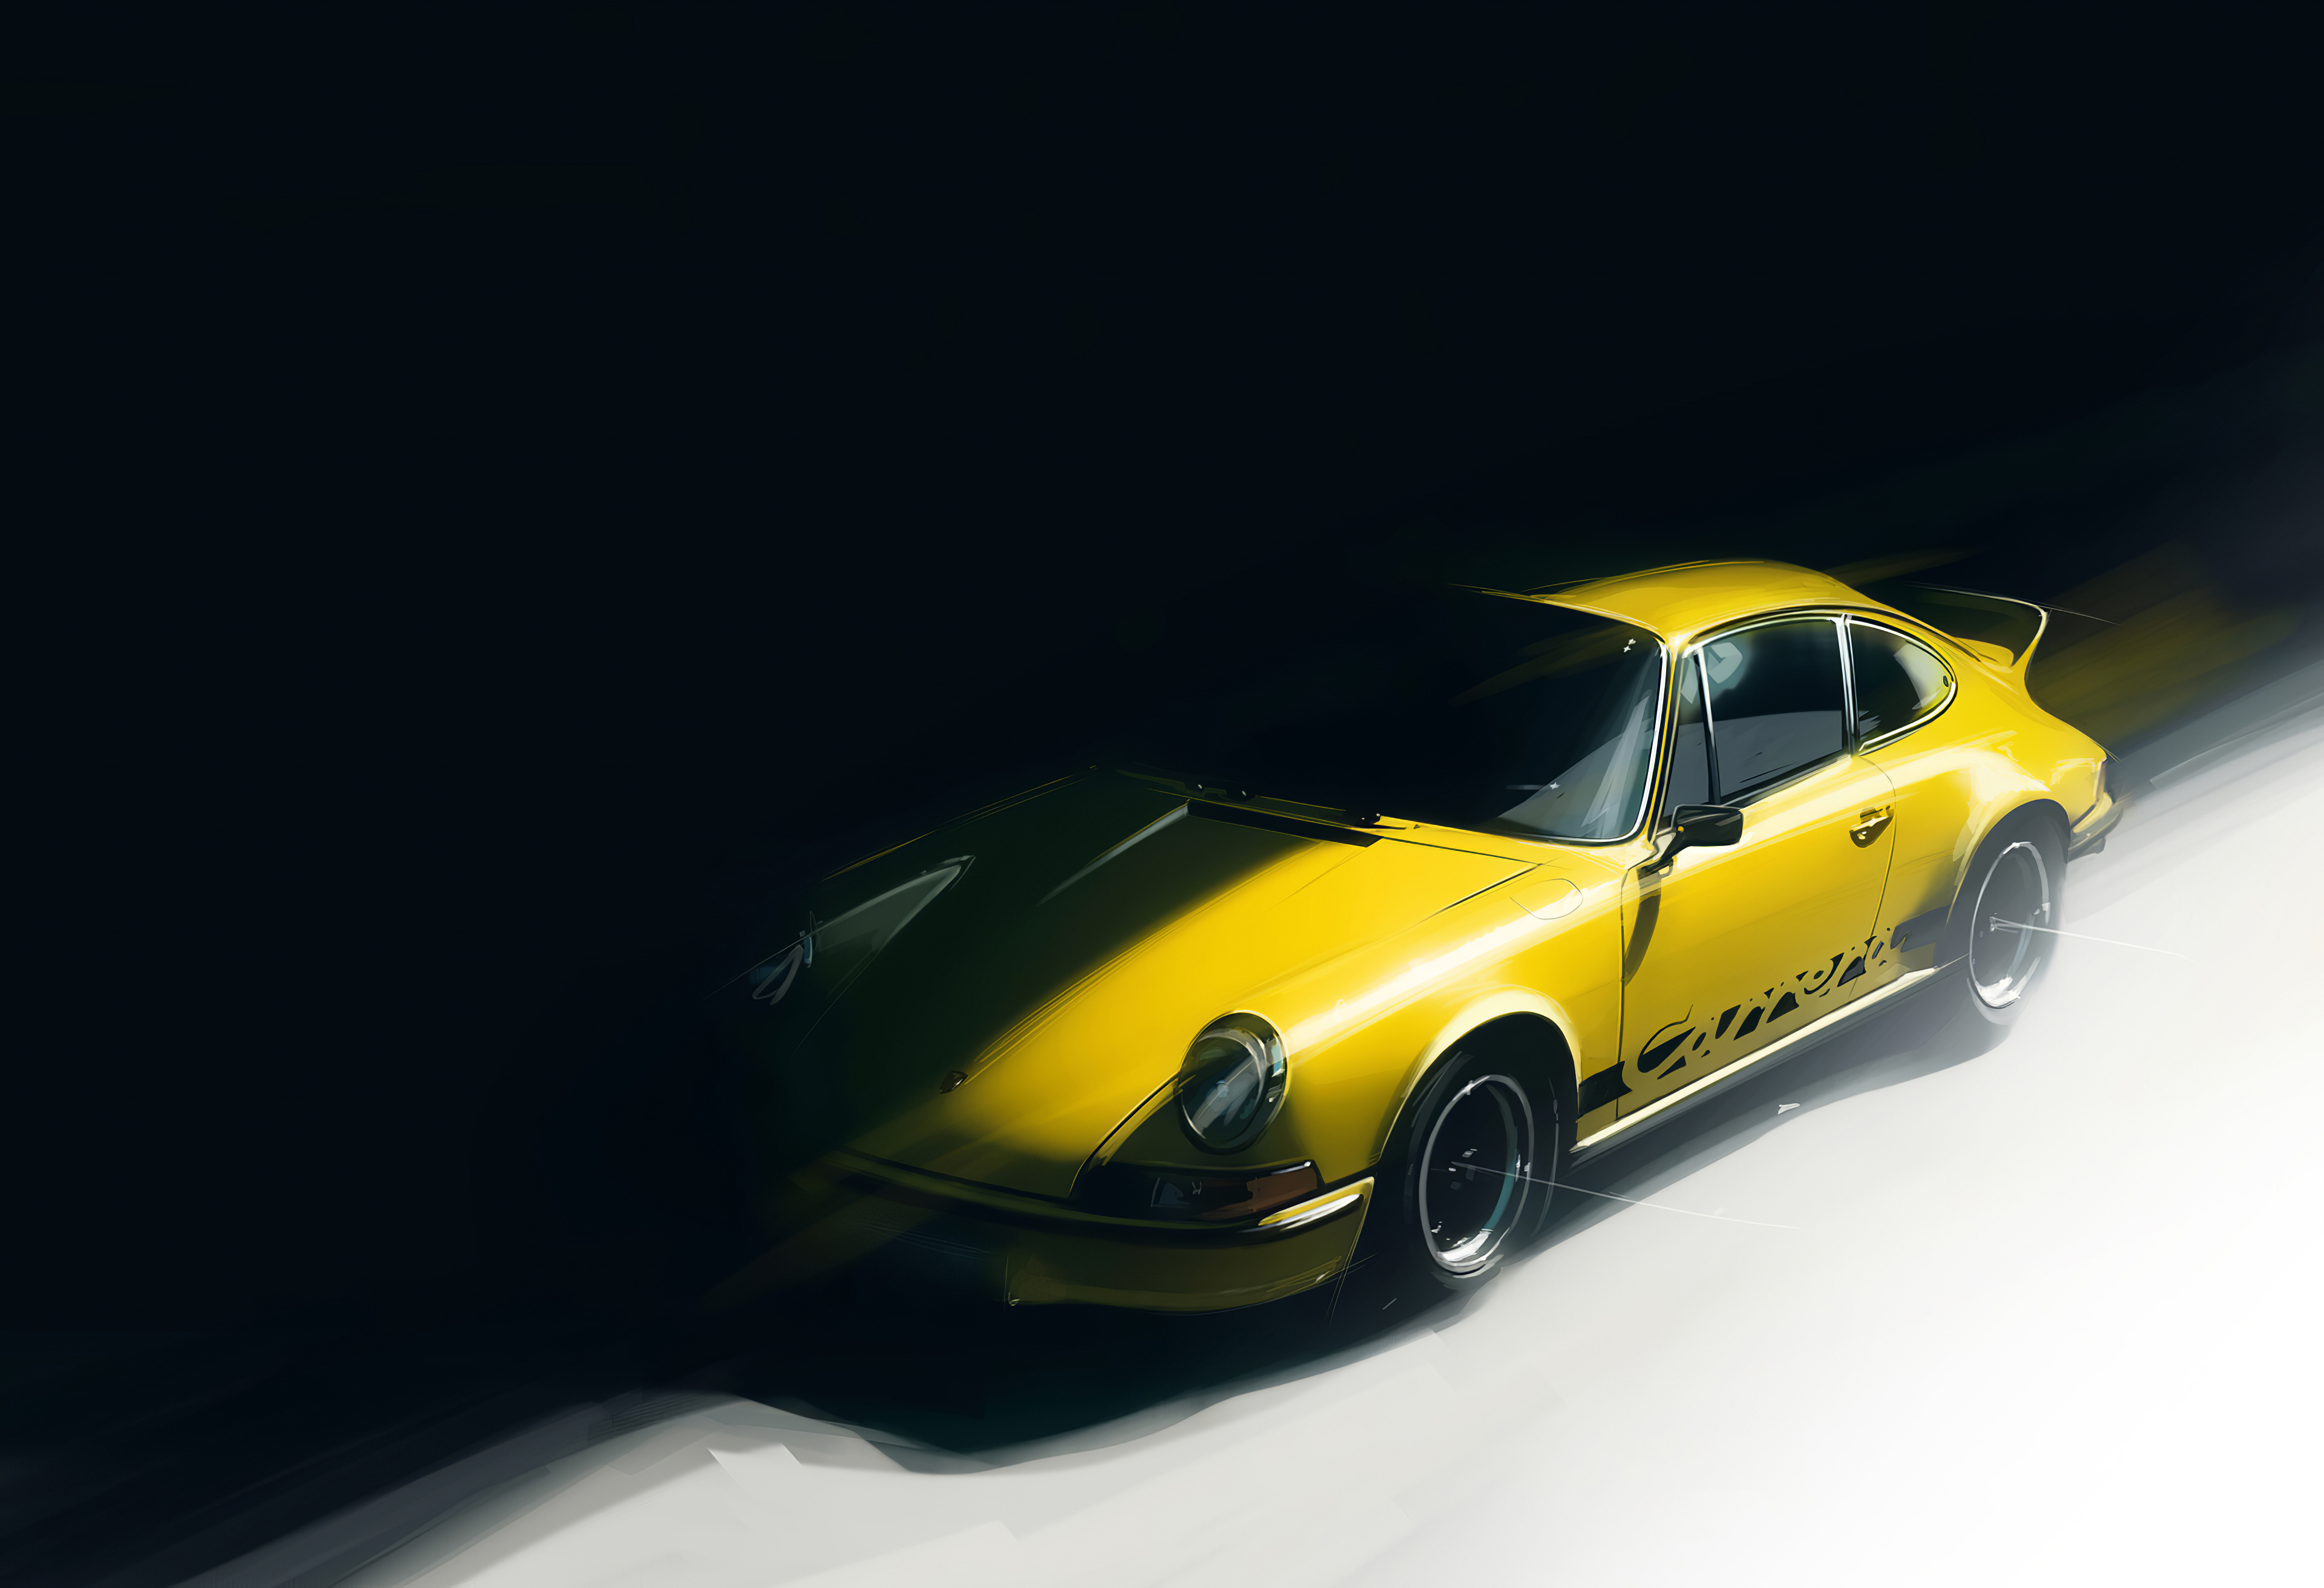 A yellow Porsche 911 in the shadows